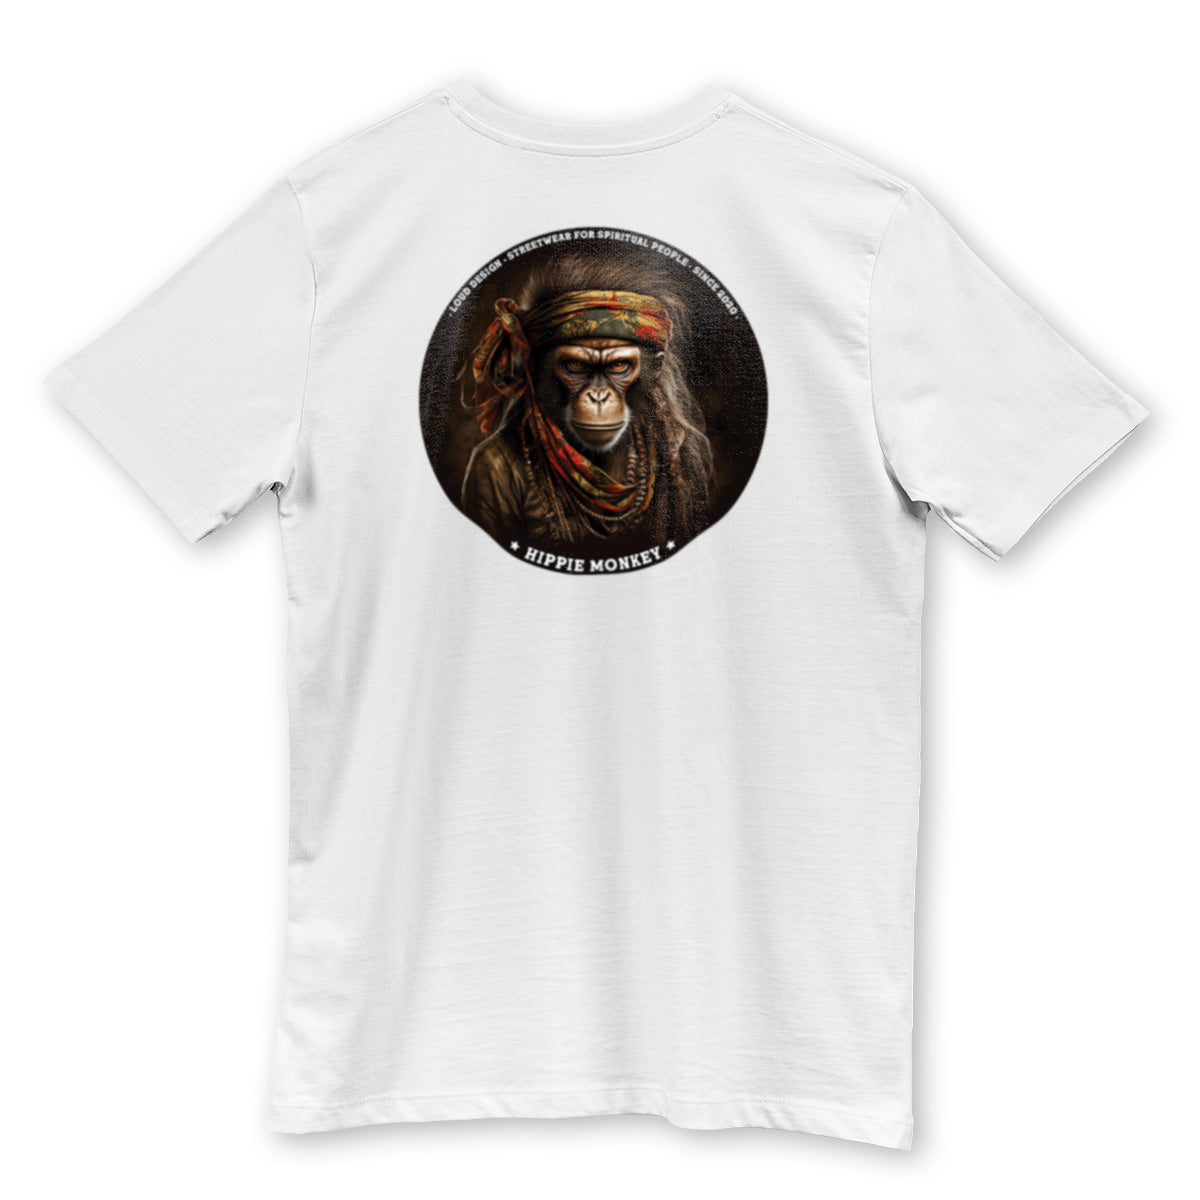 Unisex T-shirt "Hippie Monkey"